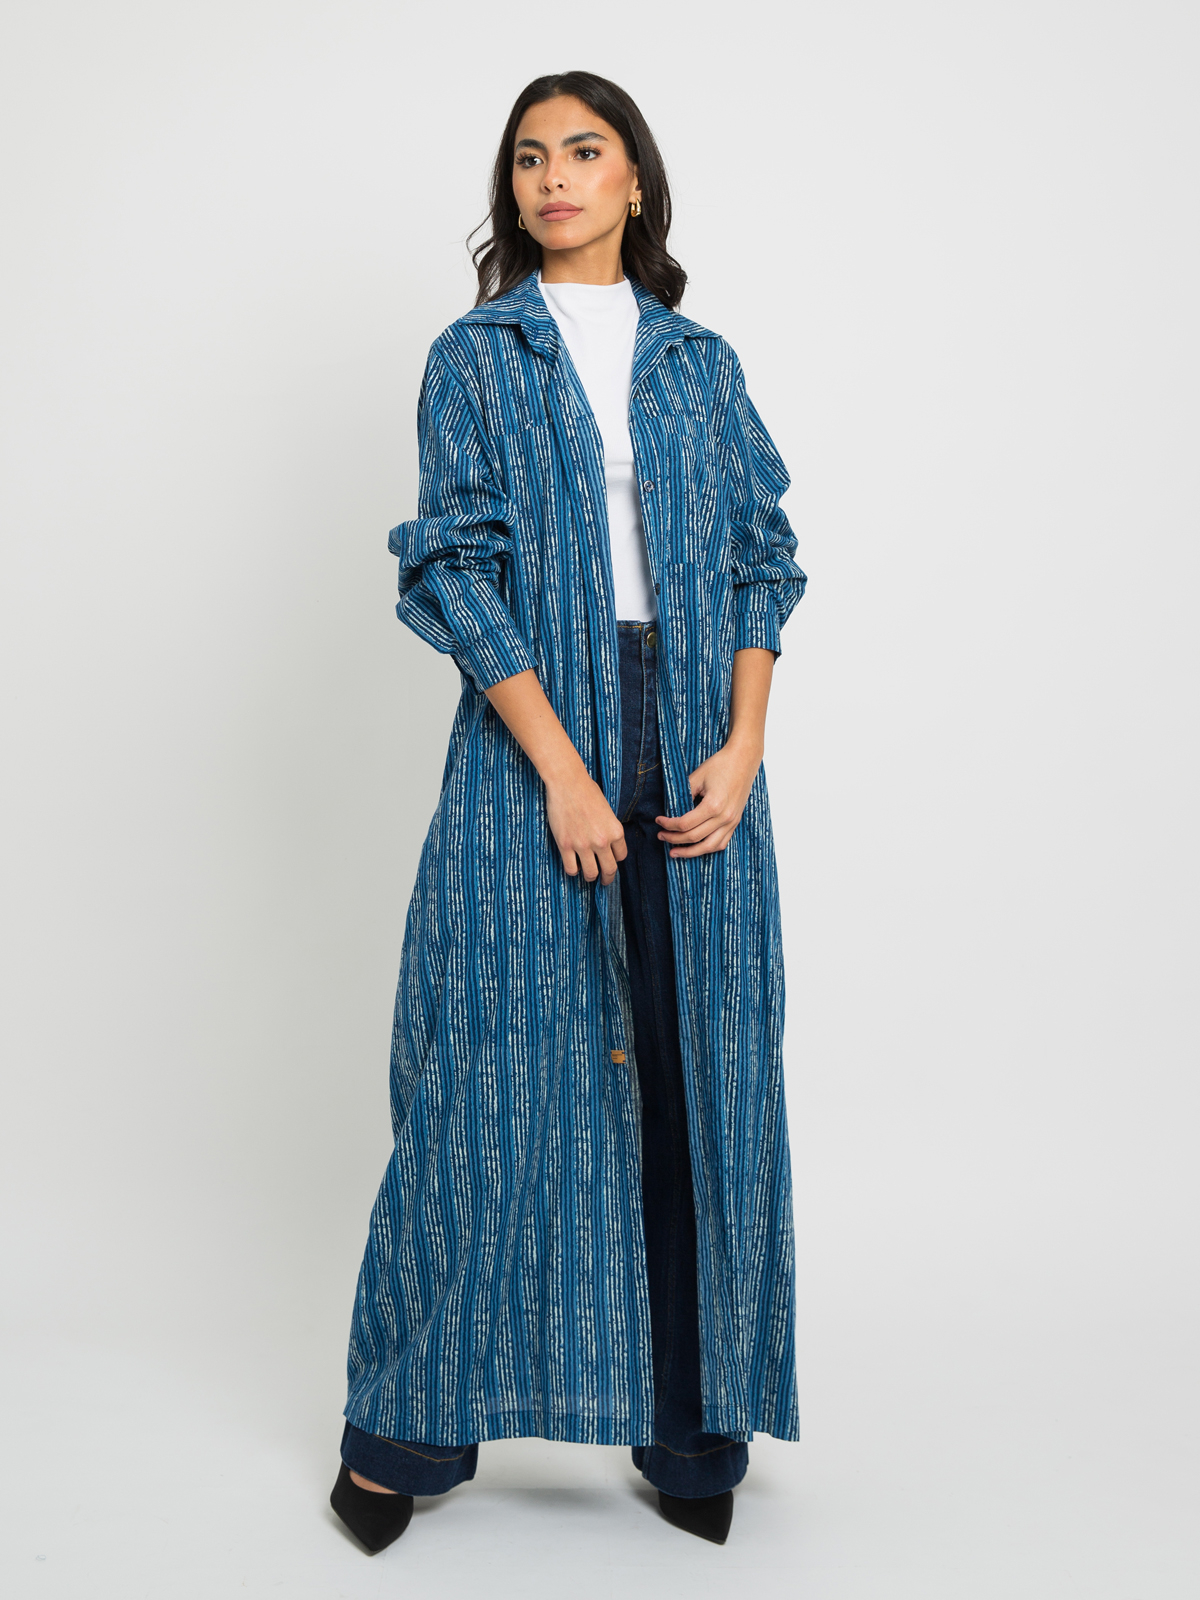 Bora Bora - Shirt-Abaya in Natural Cotton Fabric